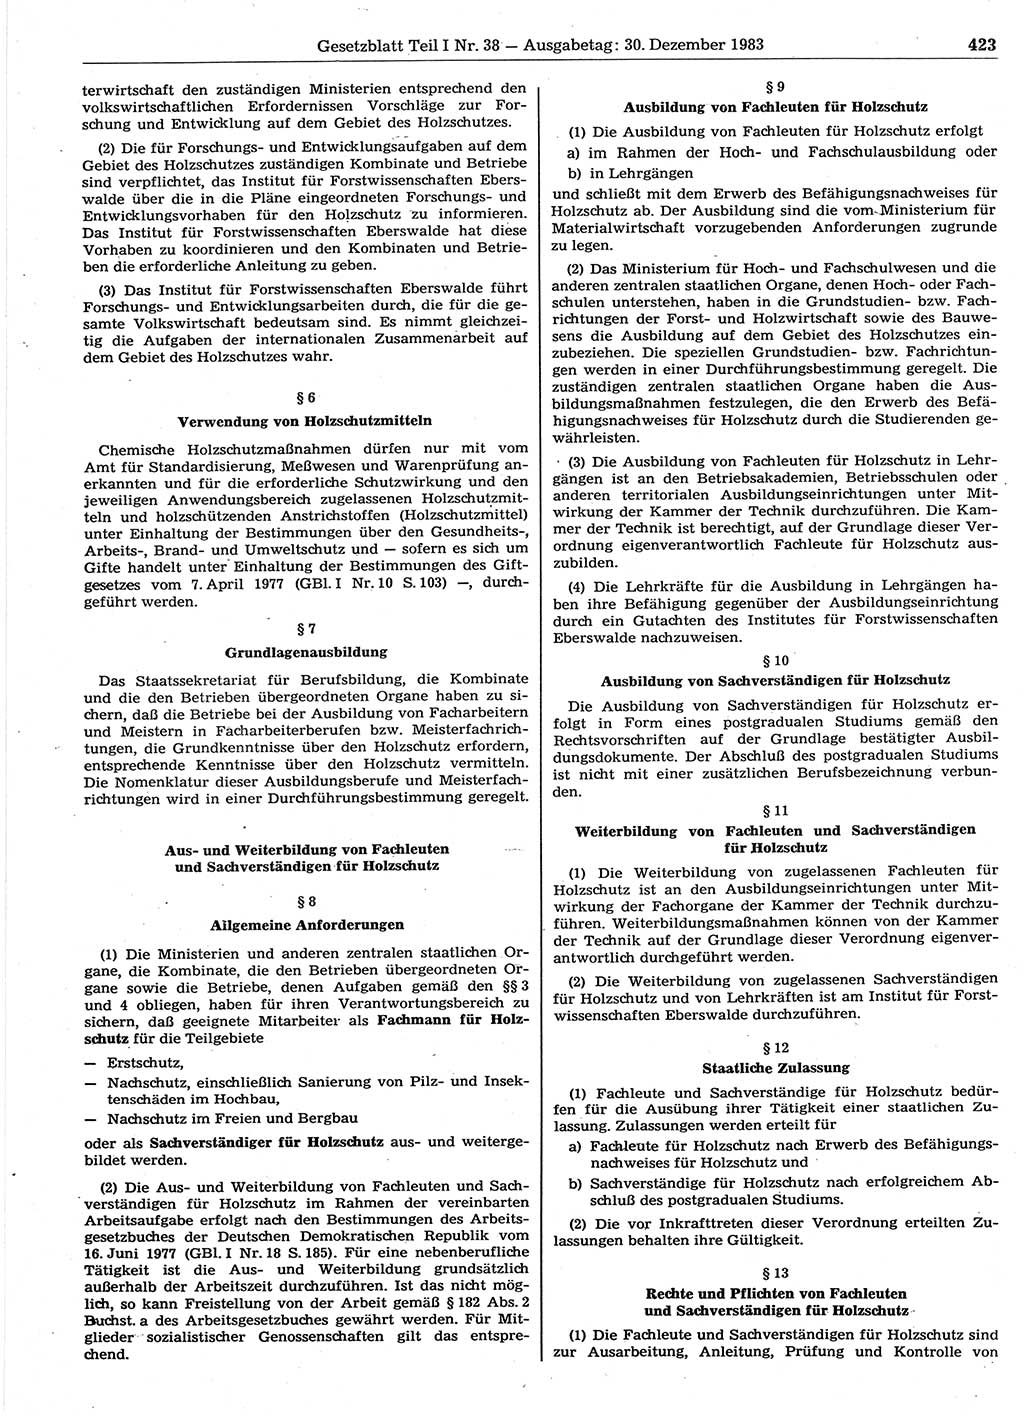 Gesetzblatt (GBl.) der Deutschen Demokratischen Republik (DDR) Teil Ⅰ 1983, Seite 423 (GBl. DDR Ⅰ 1983, S. 423)